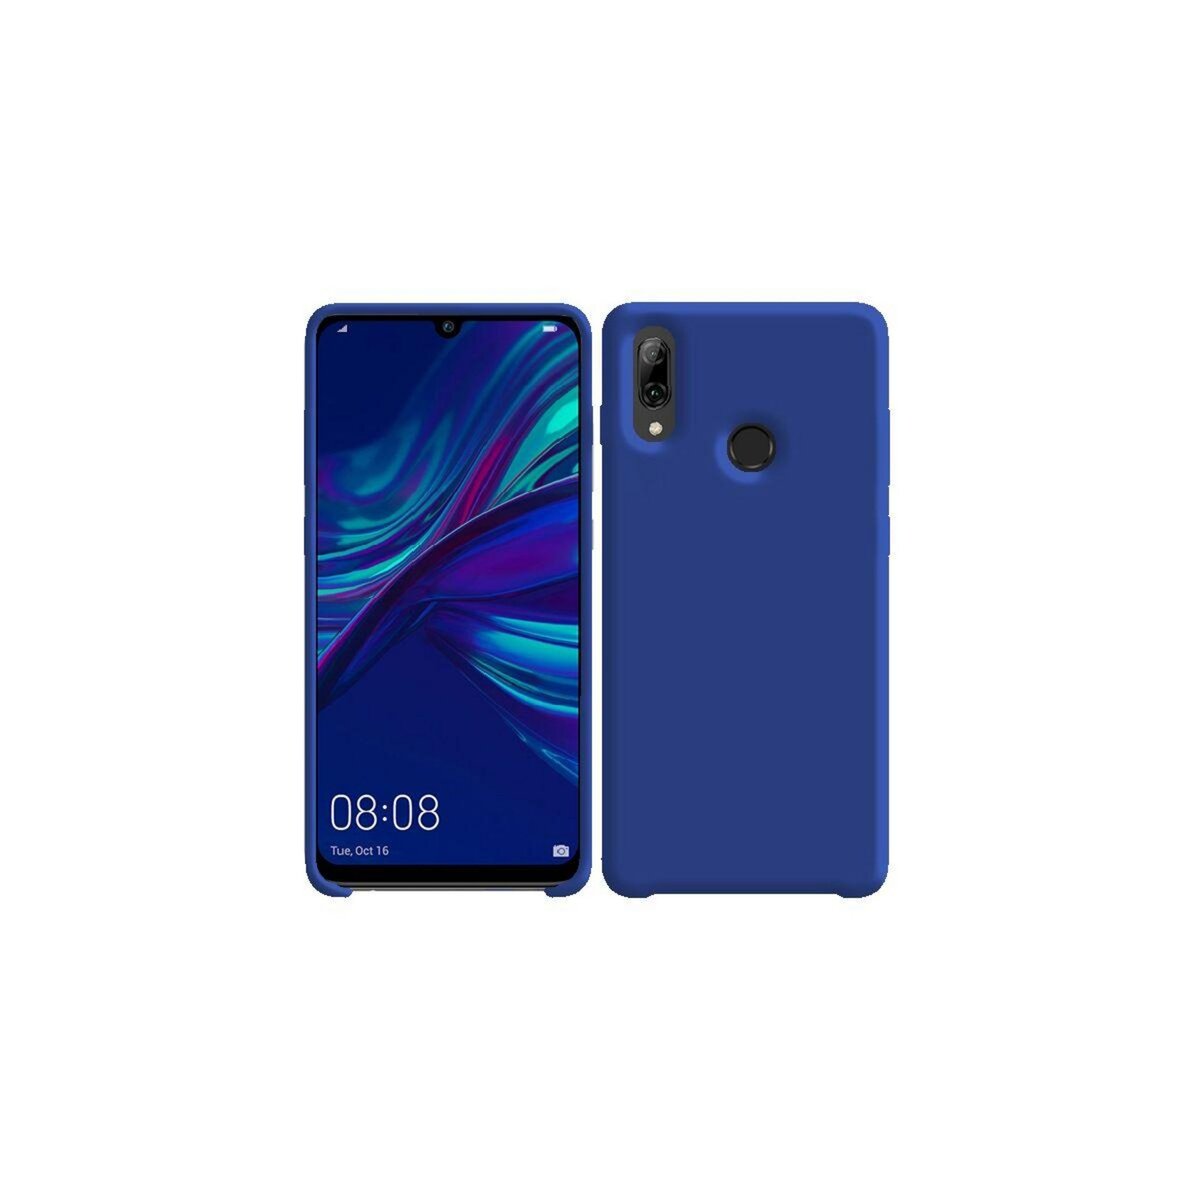 IBROZ Coque Huawei P Smart 2019 Liquid Silicone bleu